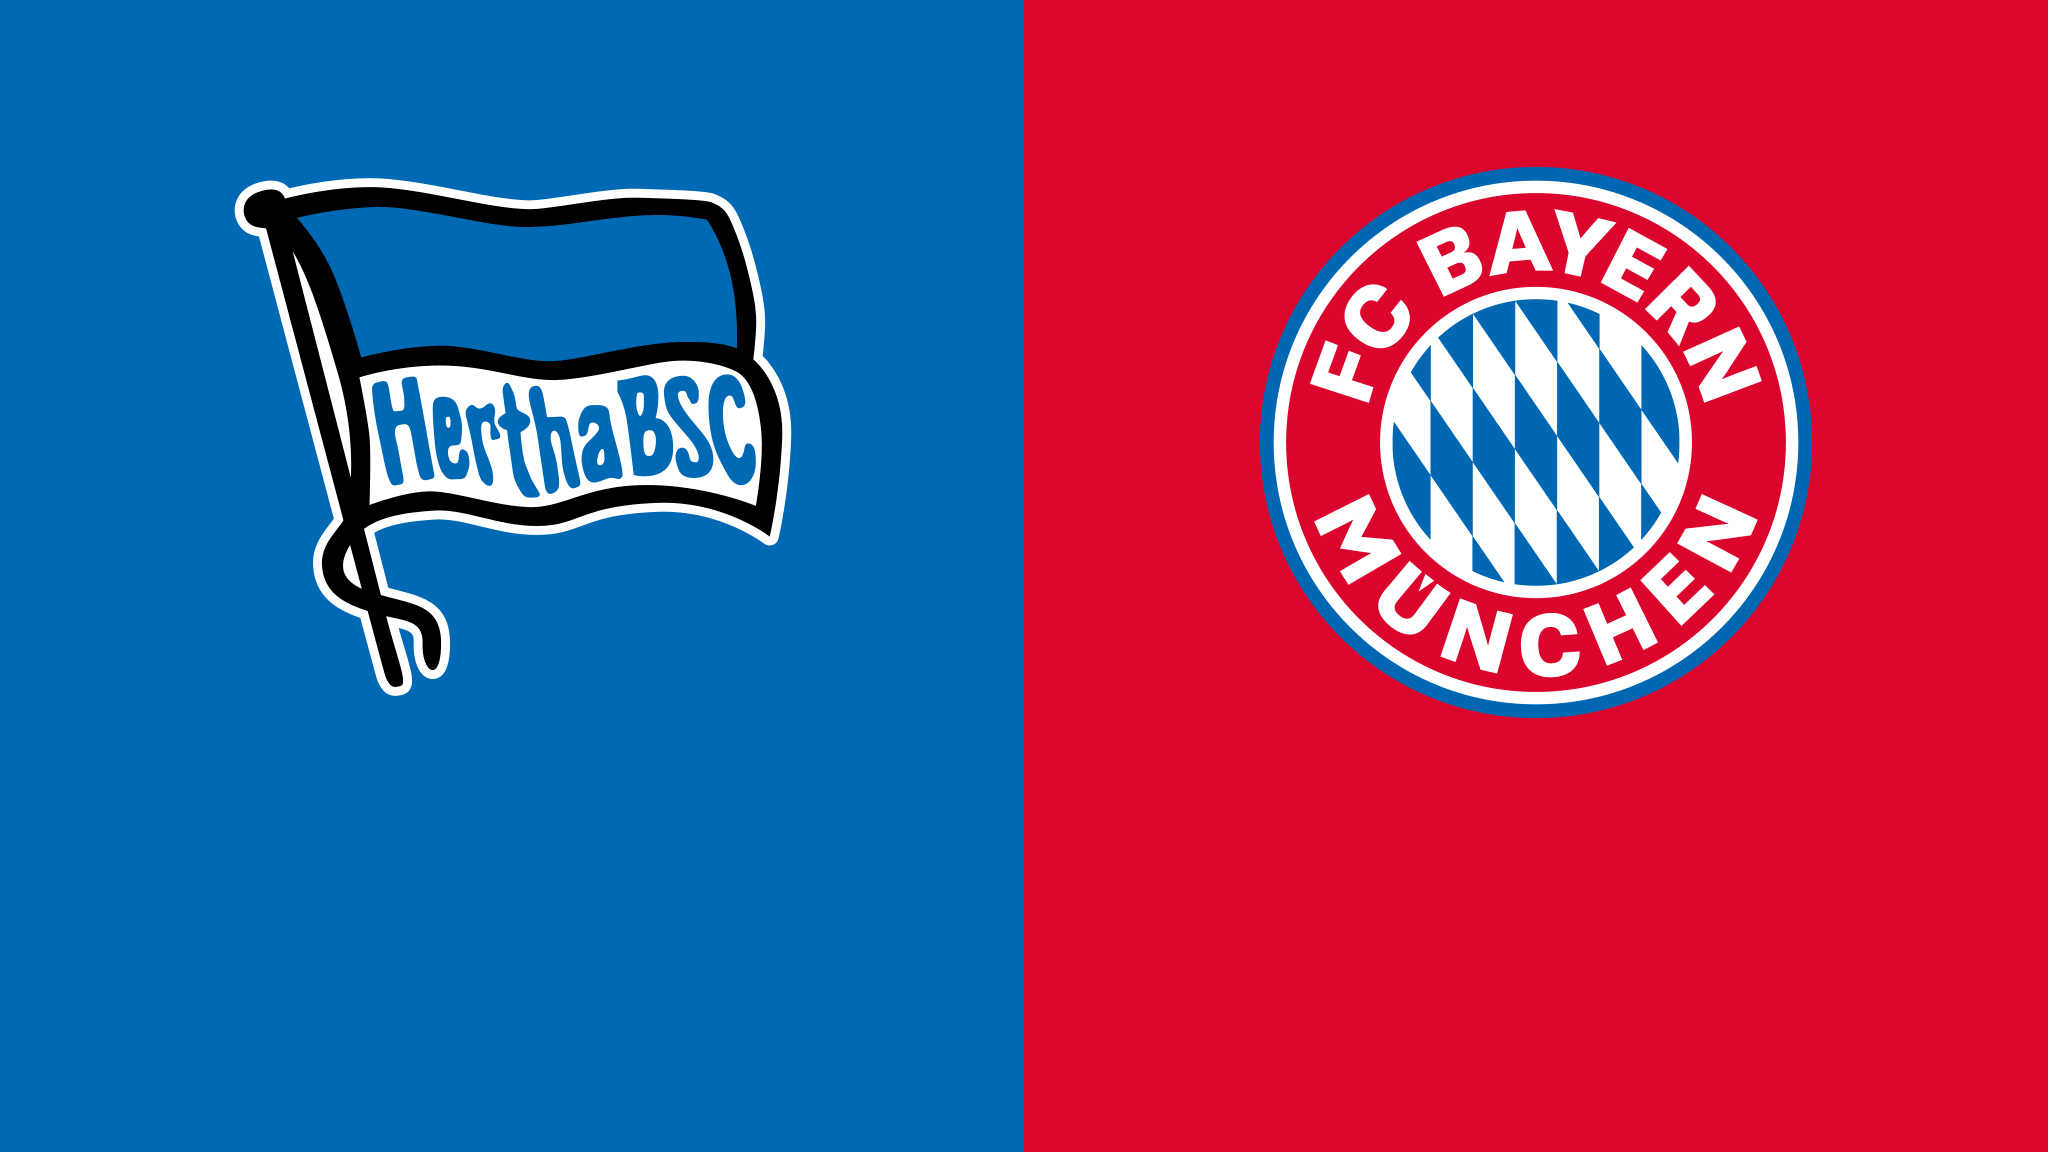  مشاهدة مباراة بايرن ميونيخ و هيرتا برلين بث مباشر 05/11/2022 Hertha BSC vs Bayern München